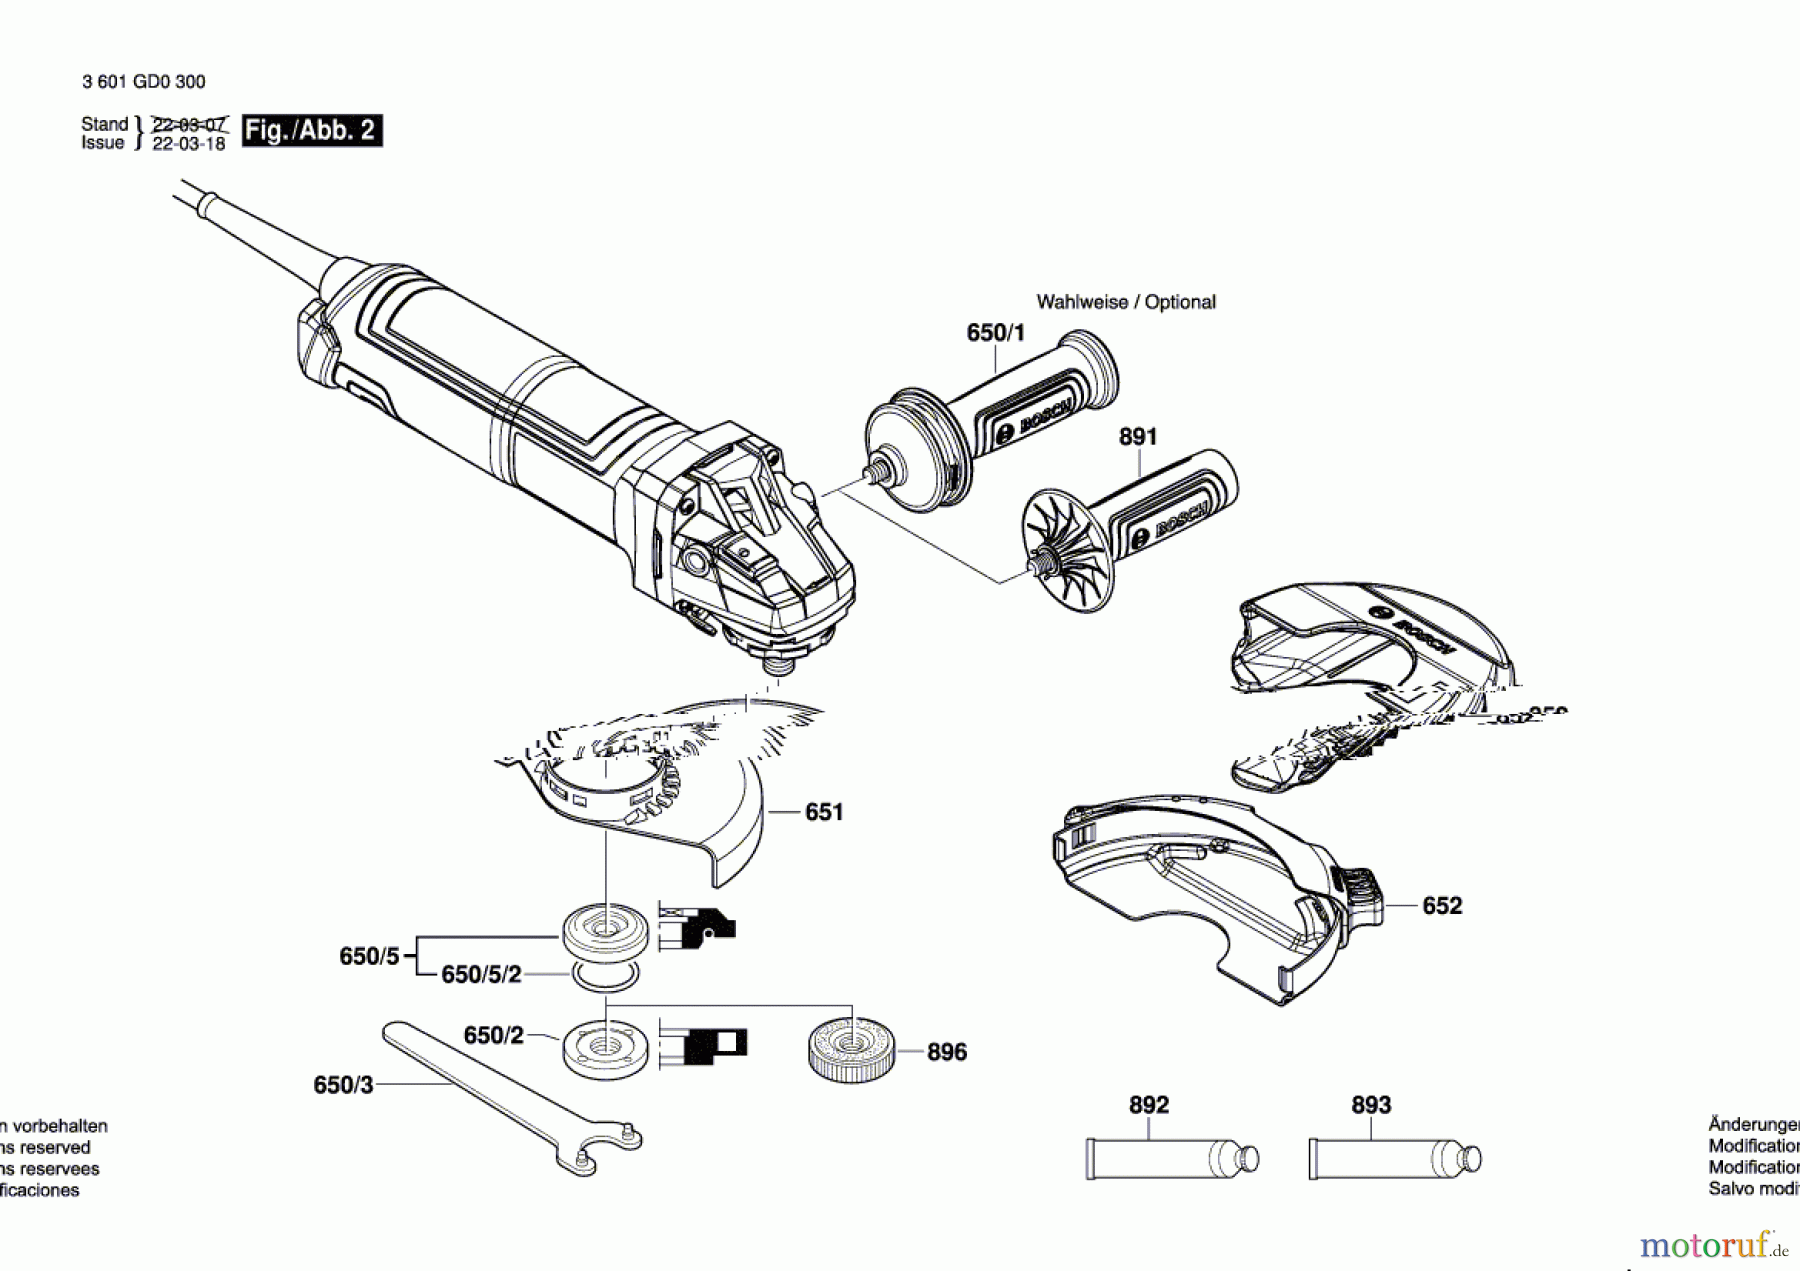  Bosch Werkzeug Winkelschleifer GWS 17-125 S INOX Seite 2